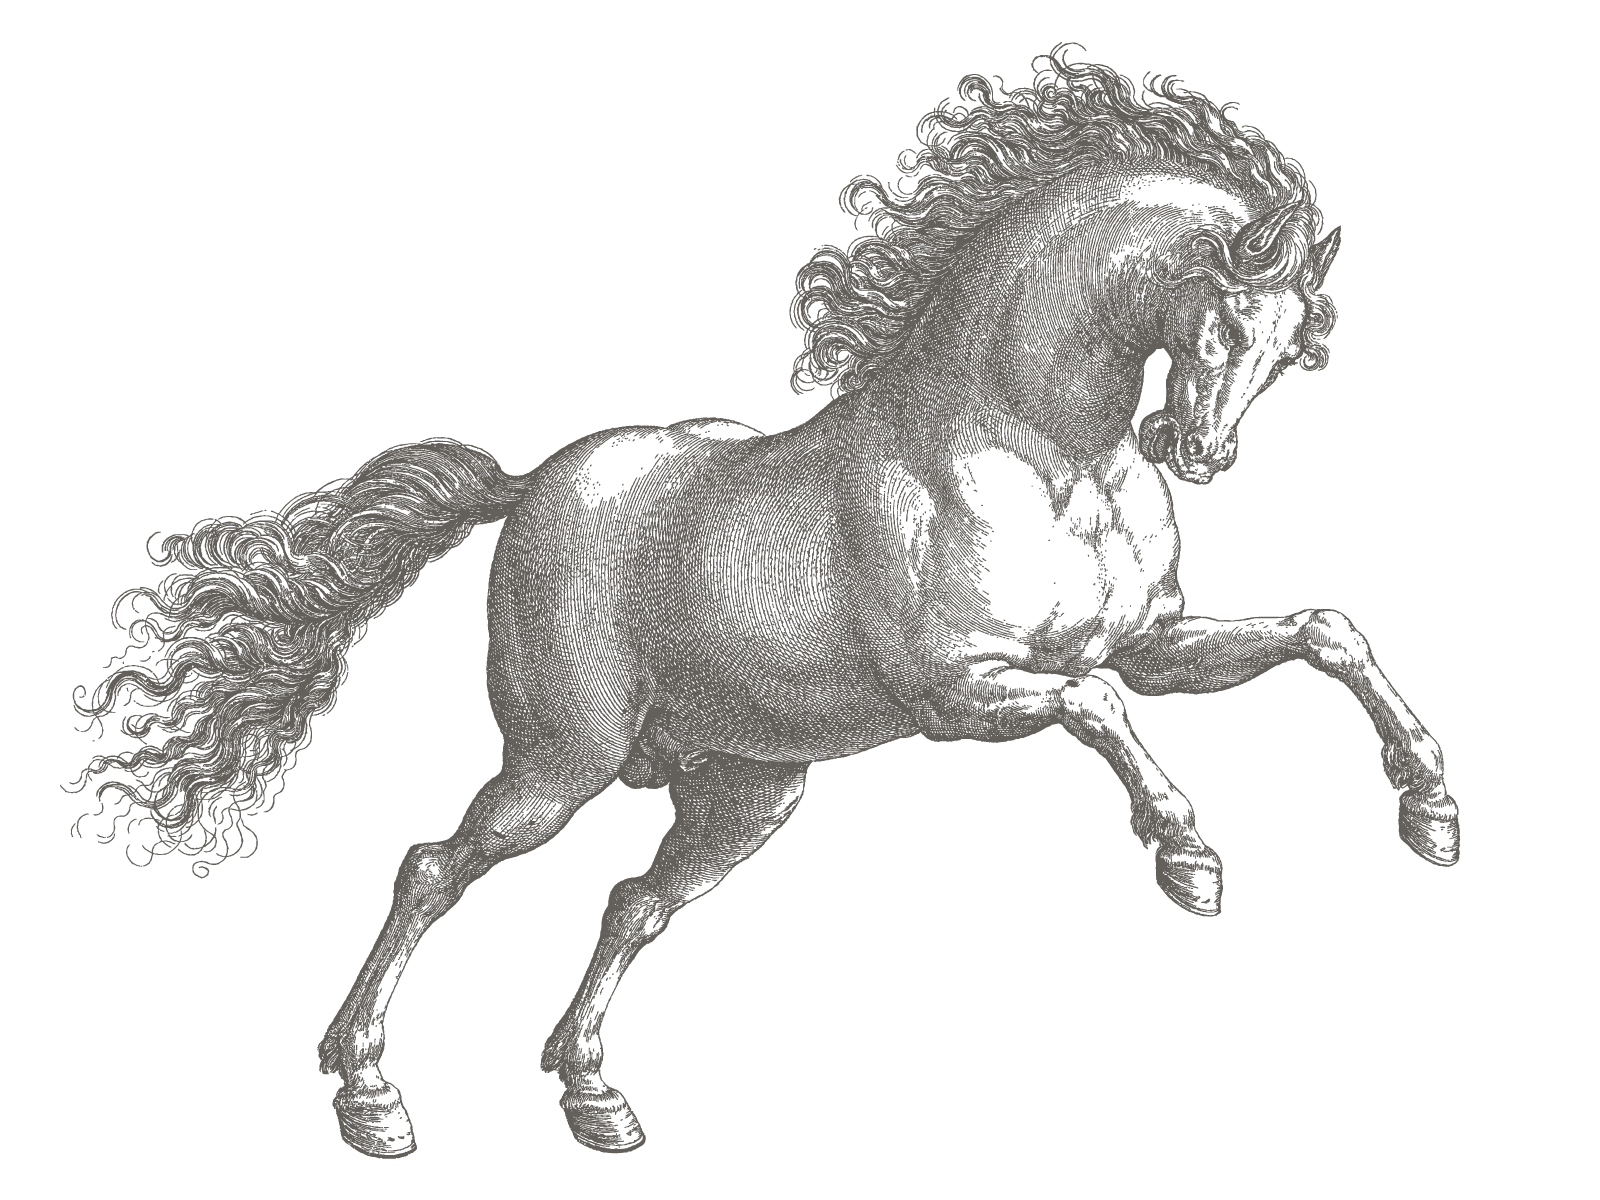 Arno vector logo